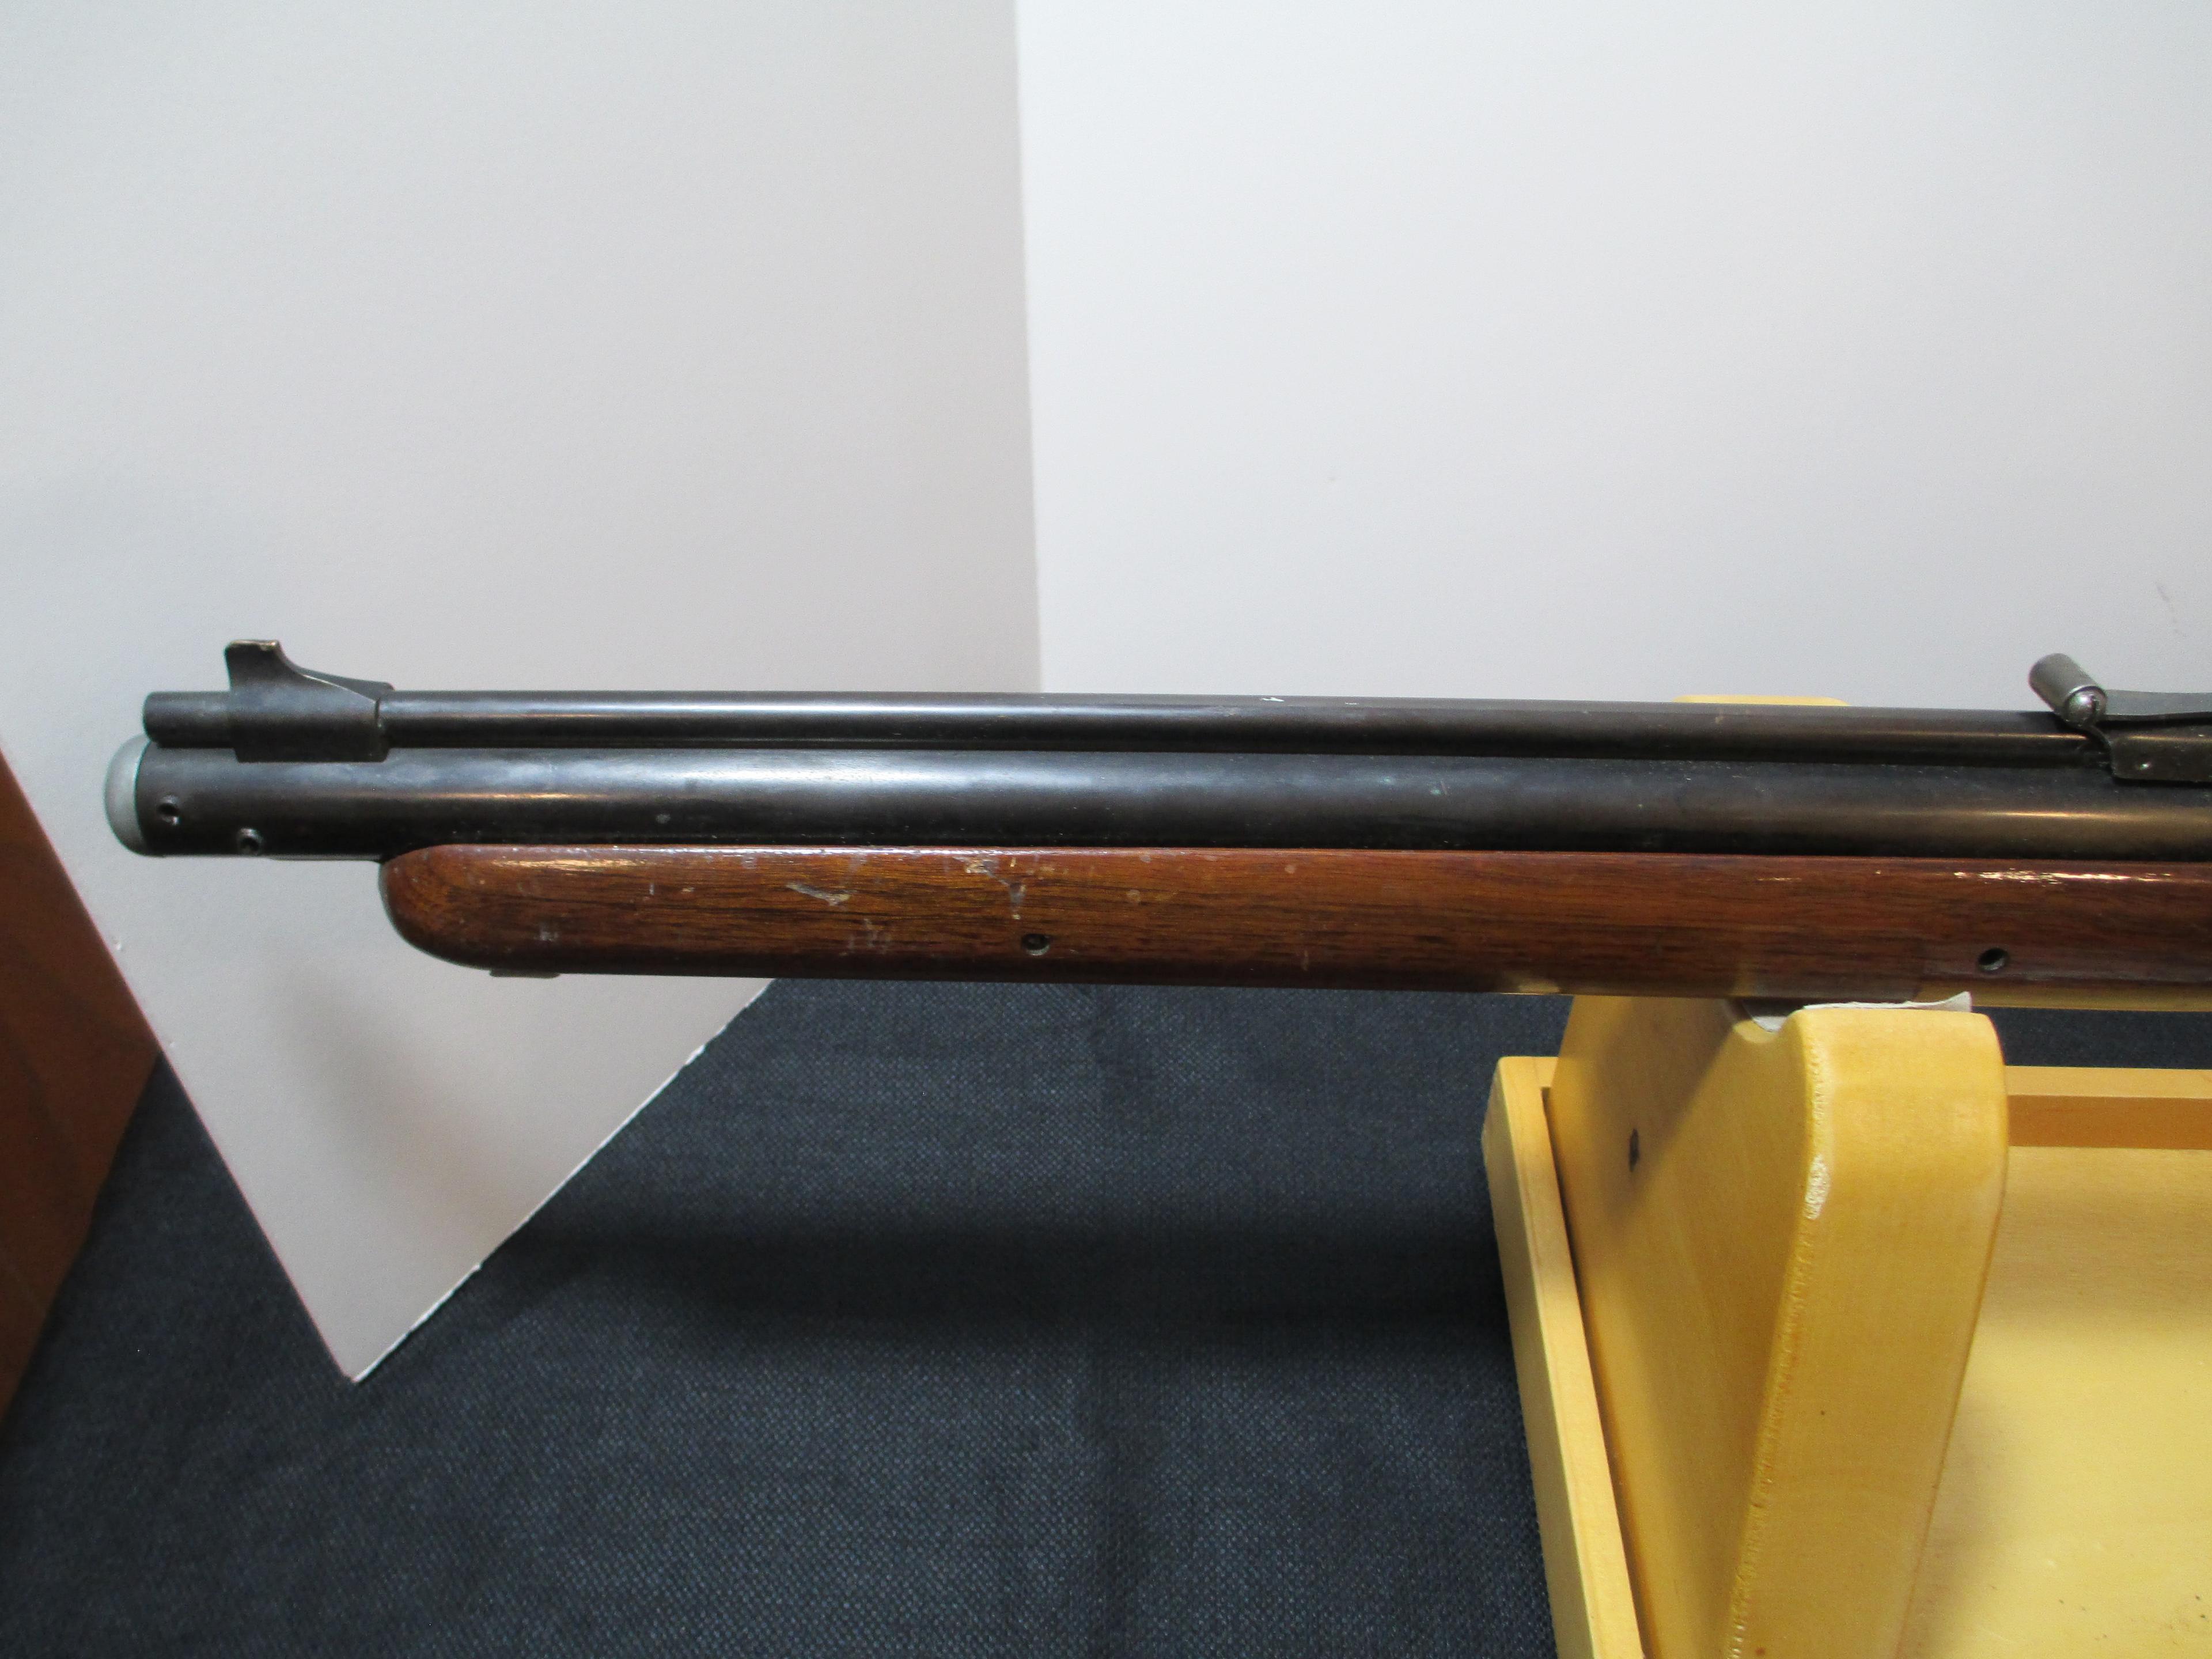 Sheridan Vintage Air Rifle 1956-1961  5mm (.20 Cal.)